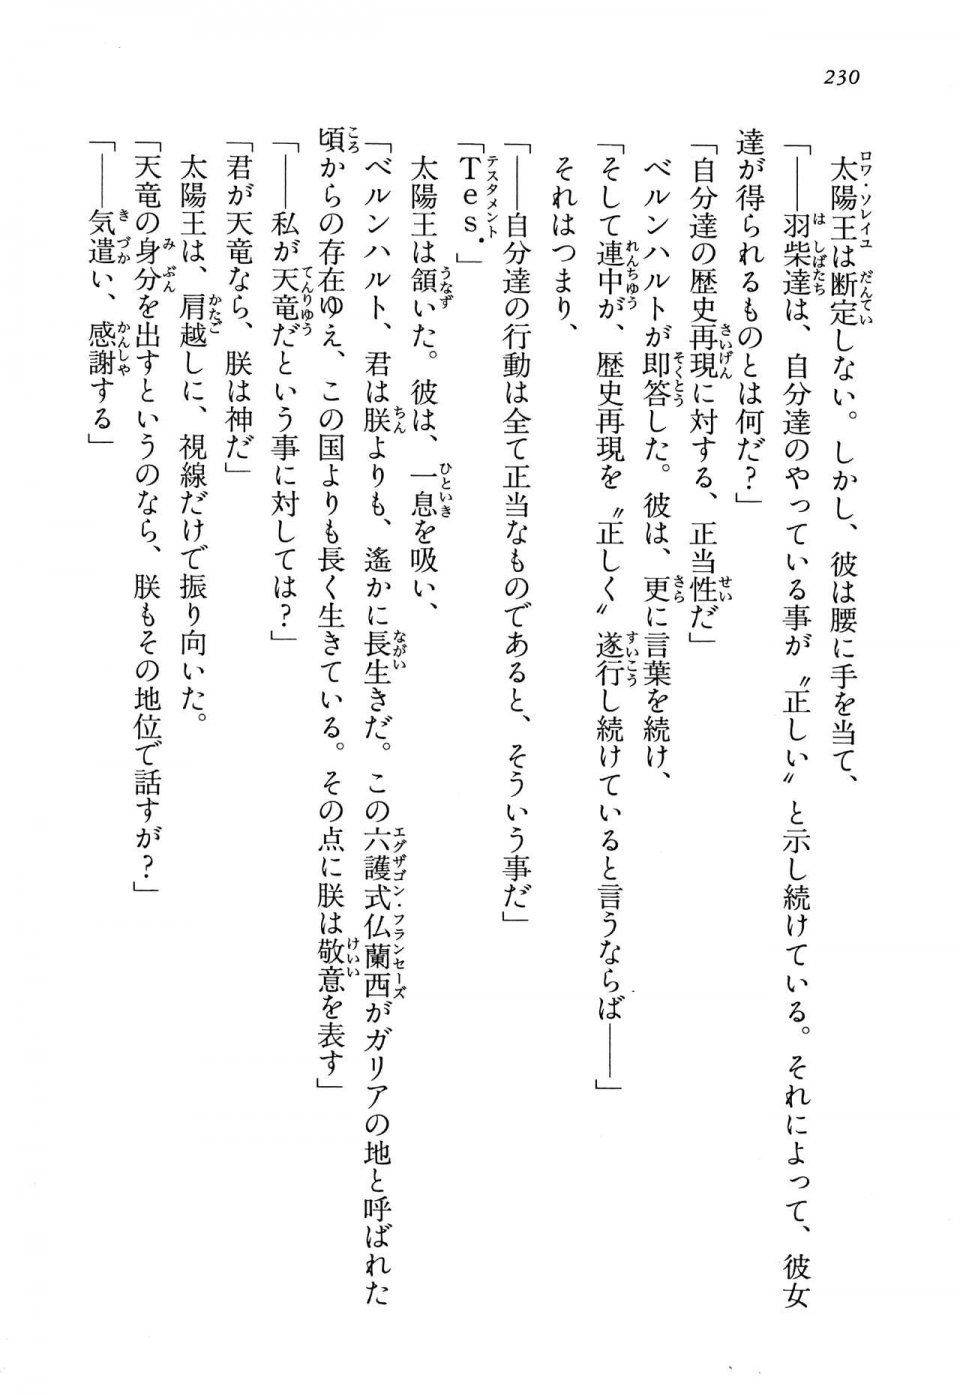 Kyoukai Senjou no Horizon LN Vol 13(6A) - Photo #230